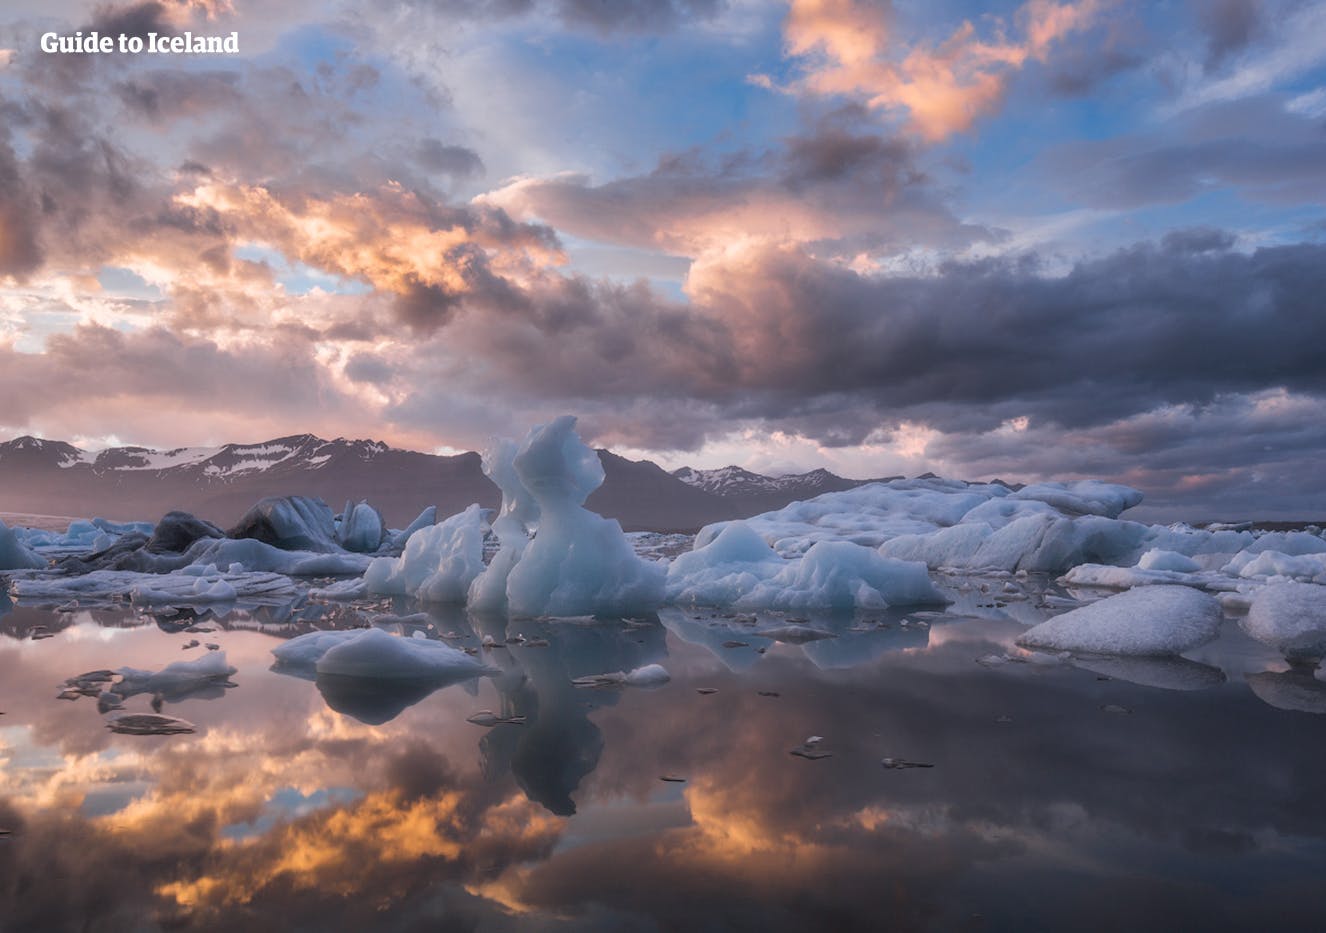 在冰岛六月的夏至日，您可以走到塞里雅兰瀑布的后方欣赏午夜阳光和冰岛南岸的平原